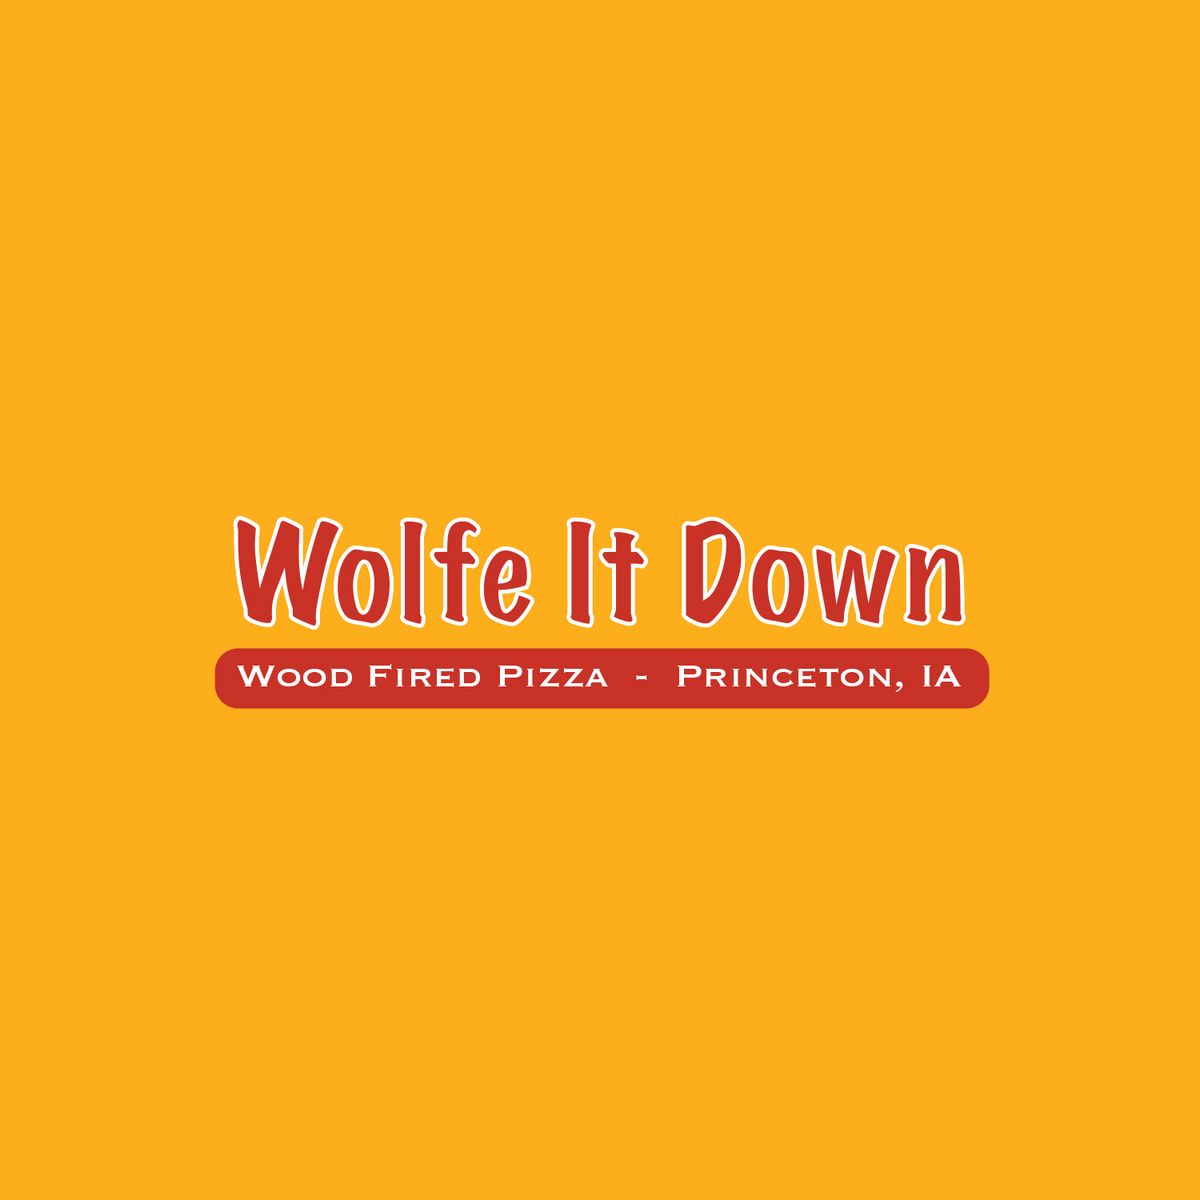 Wolfe It Down Pizza | Lunch in Mt. Joy